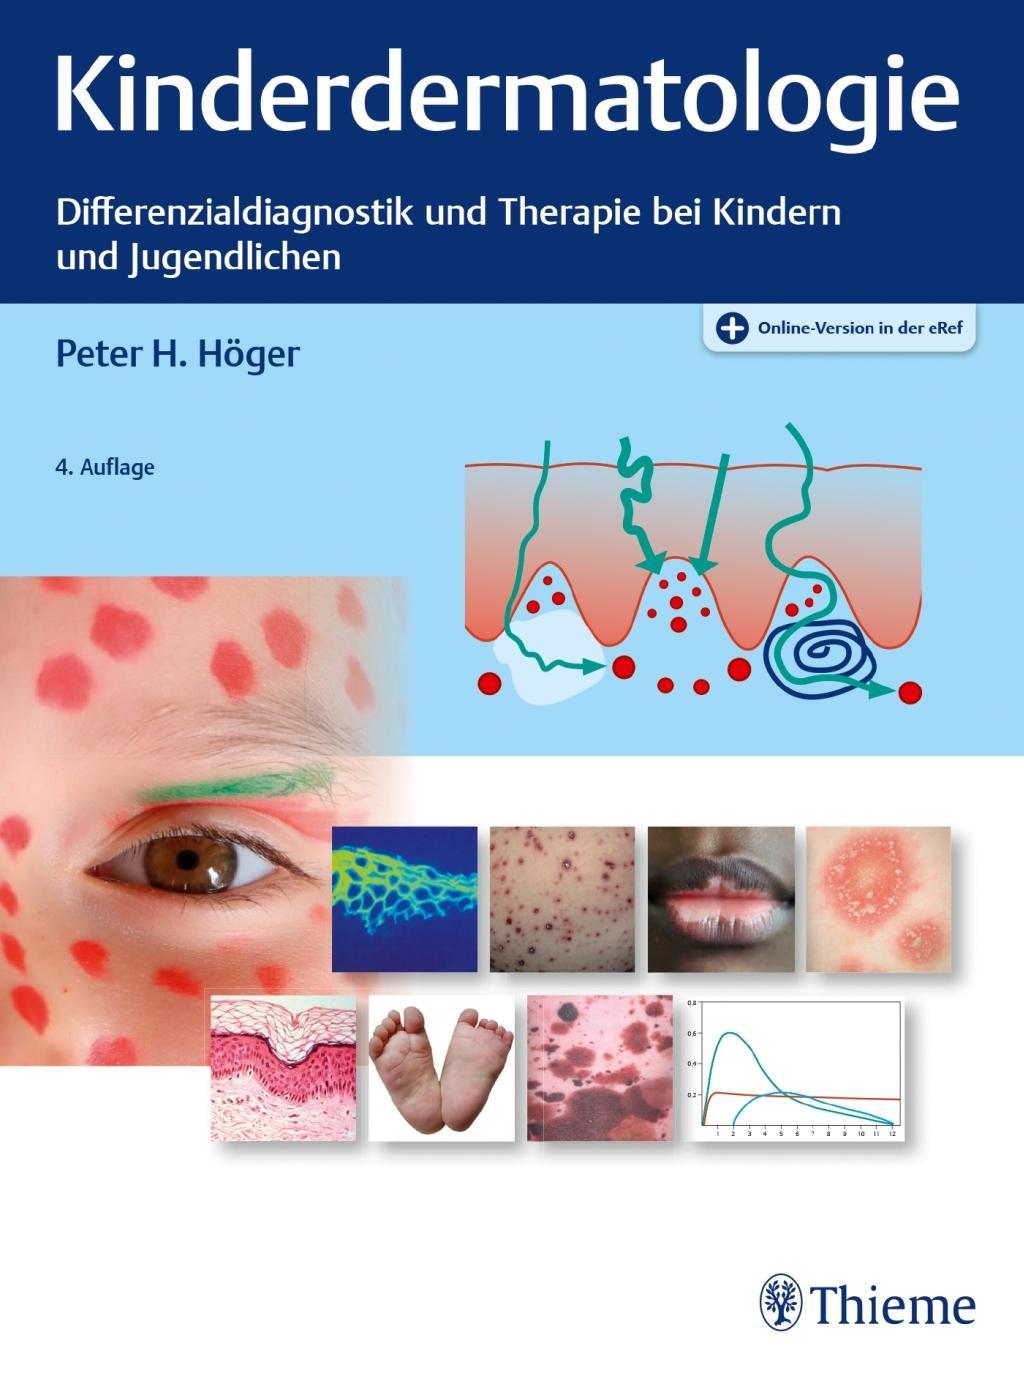 Carte Kinderdermatologie Peter H. Höger